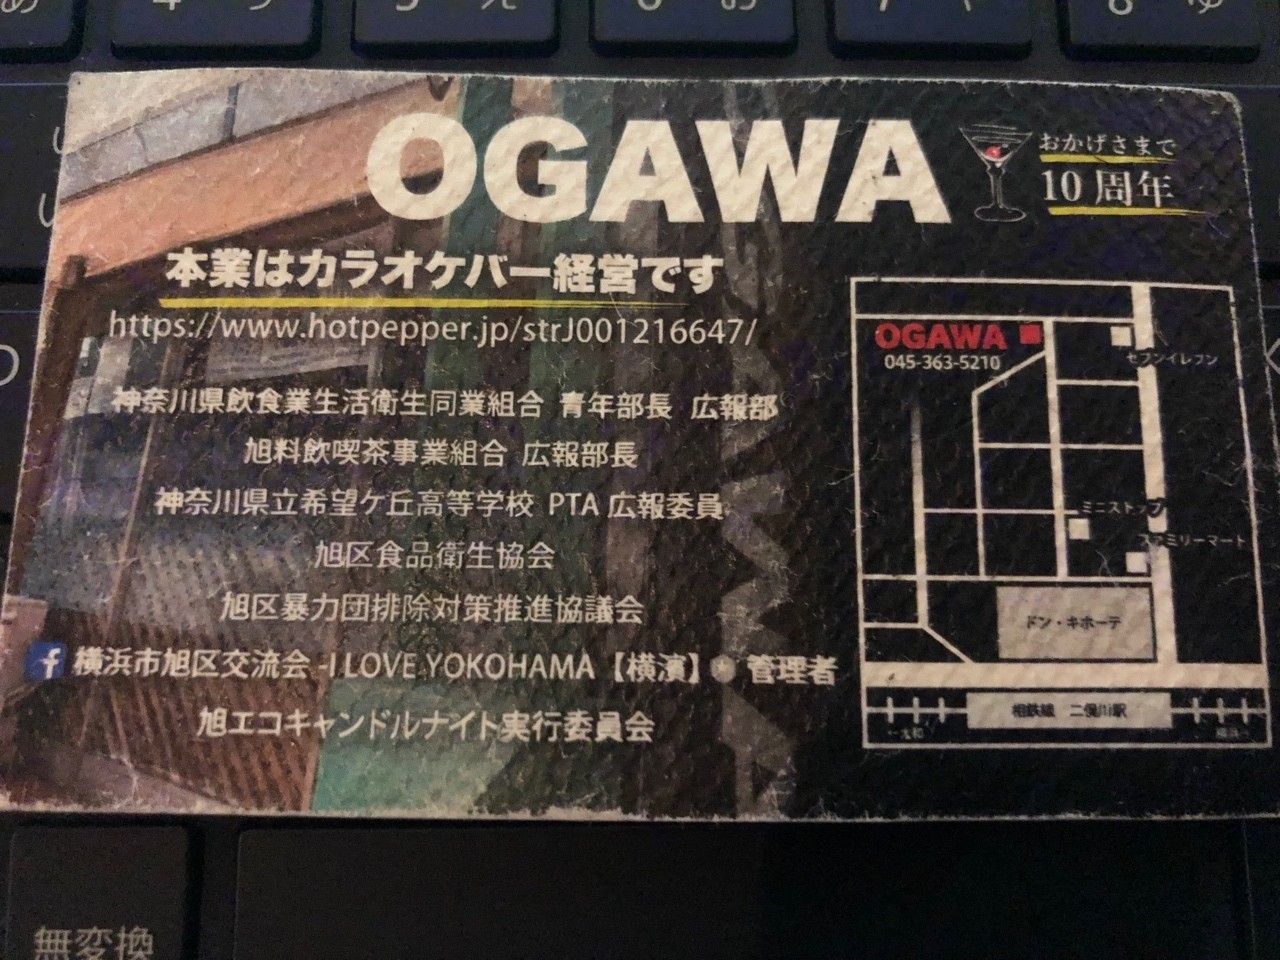 5月11日からnoteはじめて Ogawa Note